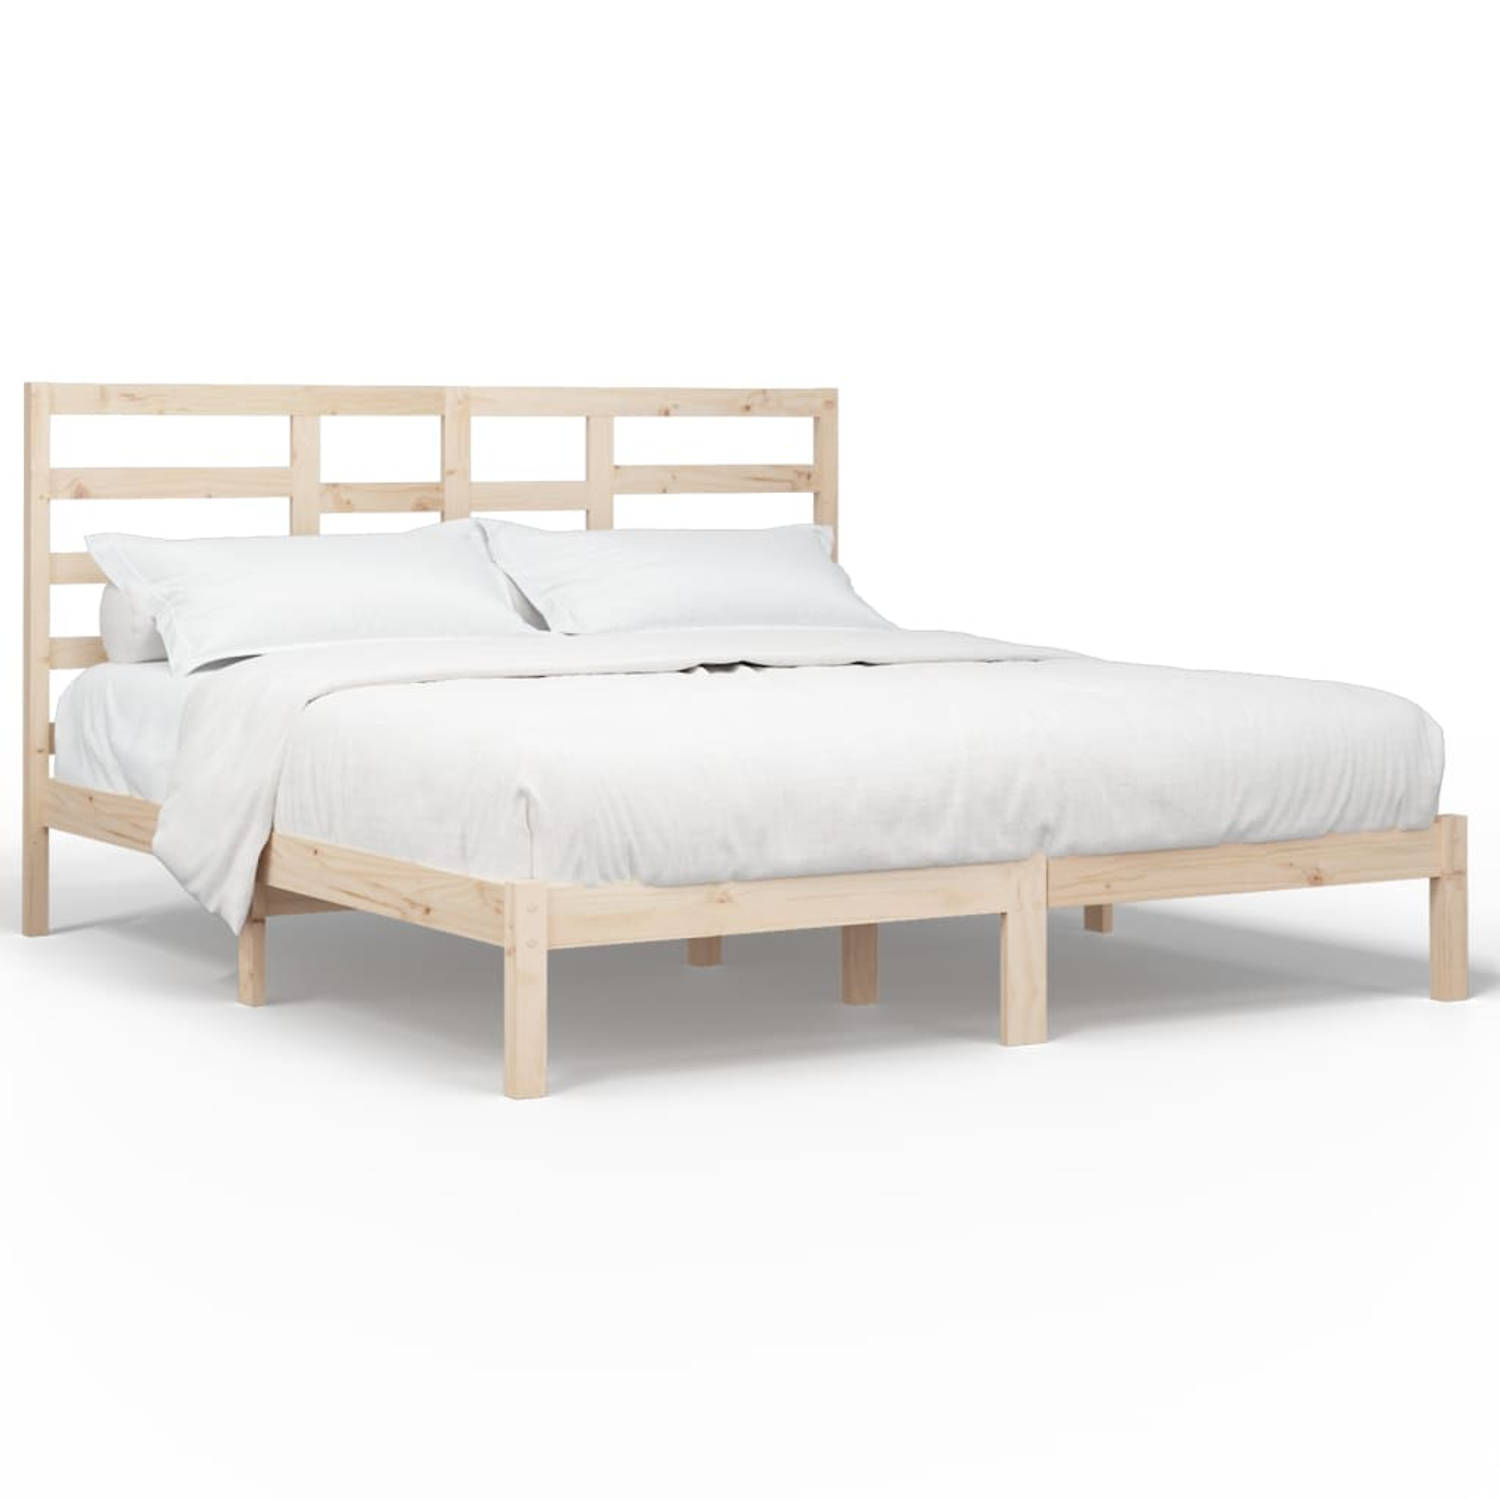 The Living Store Bedframe massief hout 200x200 cm - Bedframe - Bedframes - Bed - Bedbodem - Ledikant - Bed Frame - Massief Houten Bedframe - Slaapmeubel - Tweepersoonsbed - Bedden